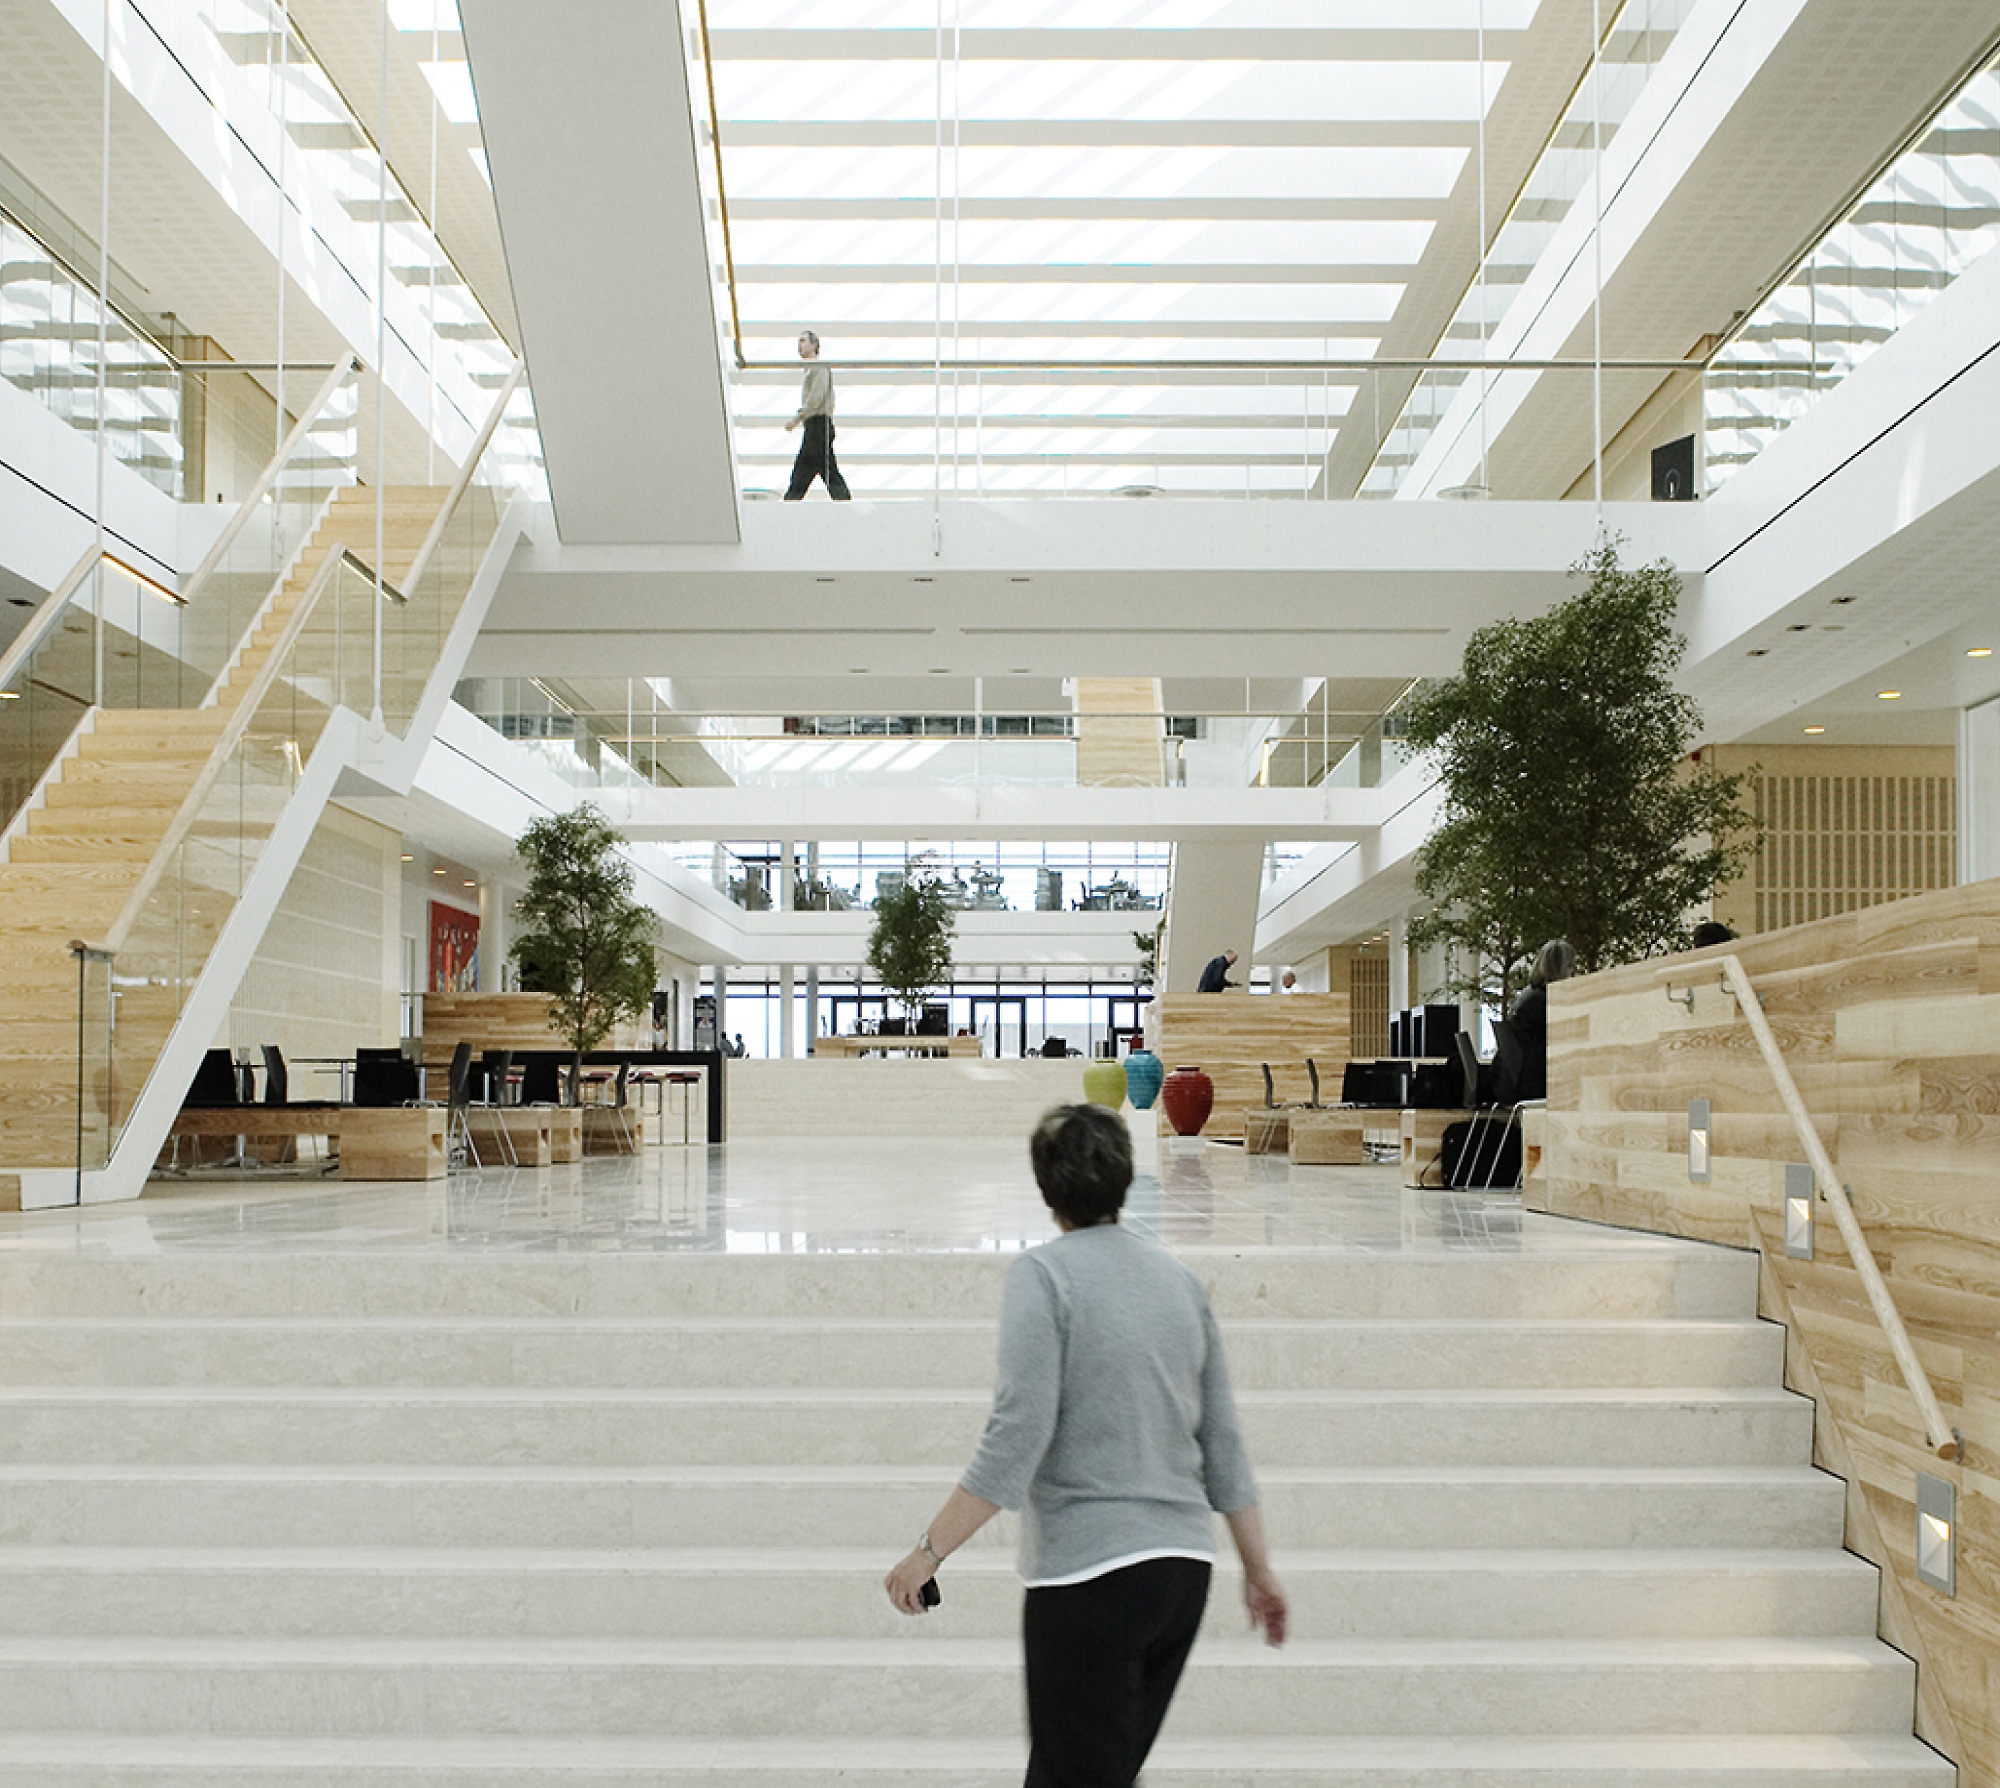 Sala de espera moderna de oficinas con grandes escaleras blancas, detalles en madera y personas caminando por la oficina. ambiente brillante y aireado.